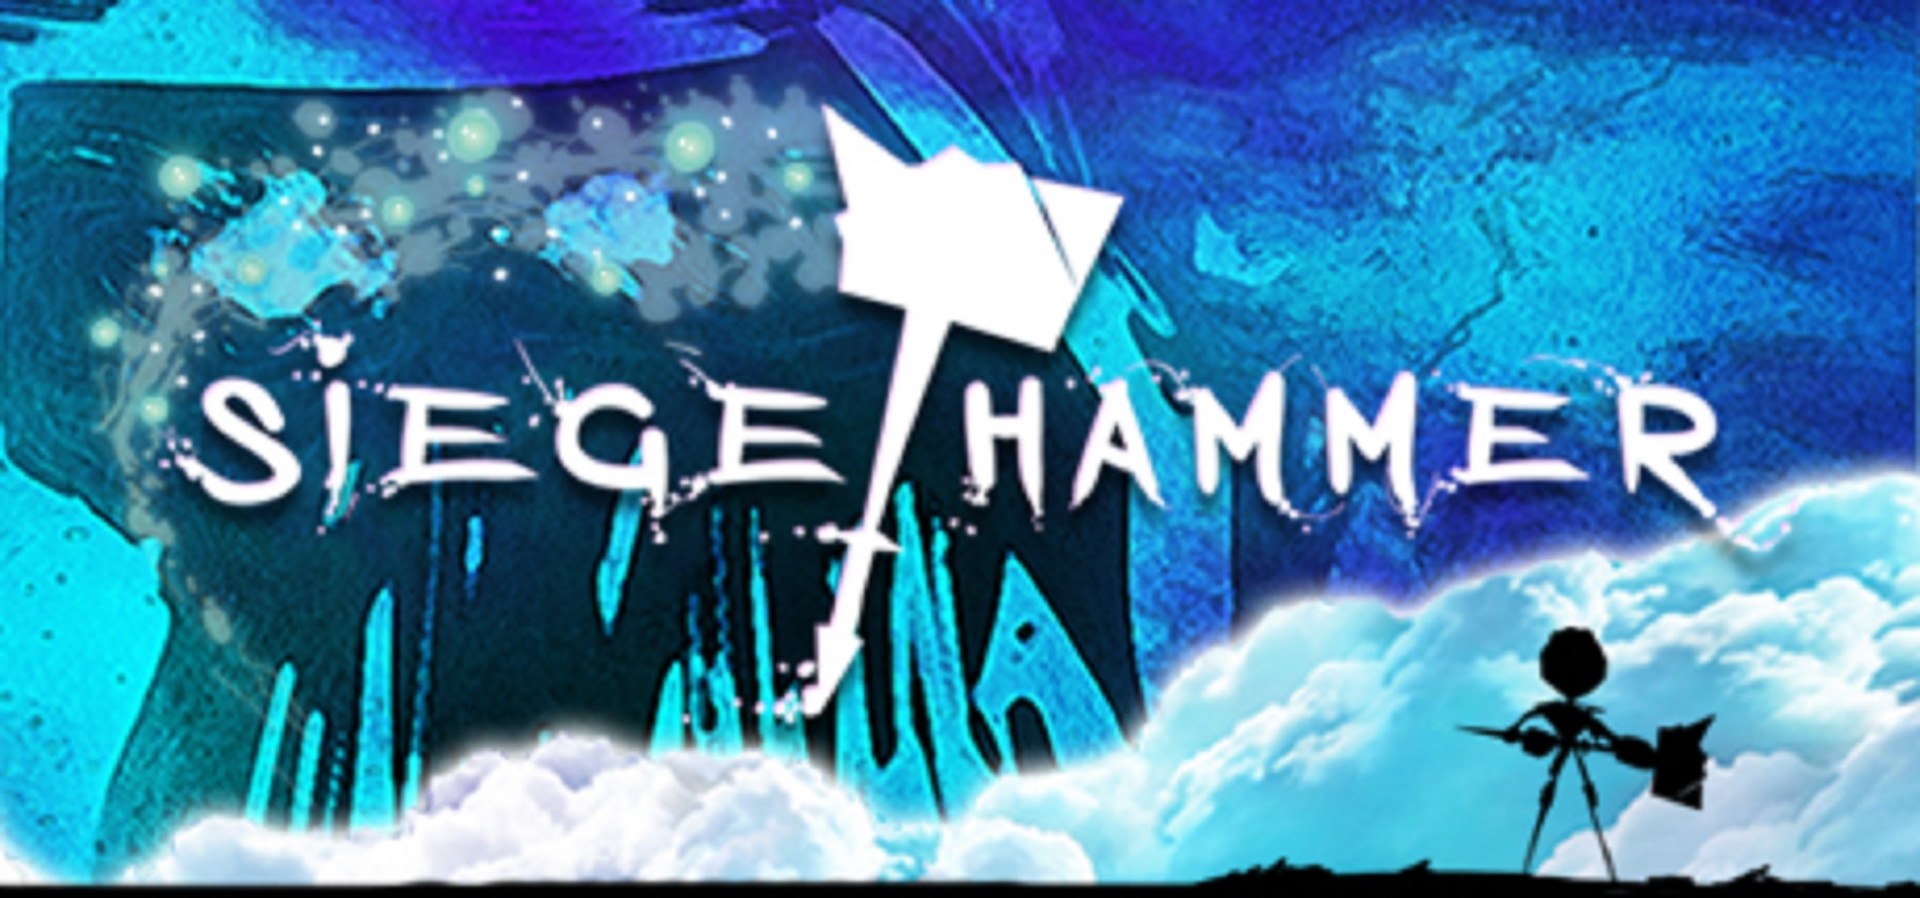 SiegeHammerVRReview - Siege Hammer VR Review